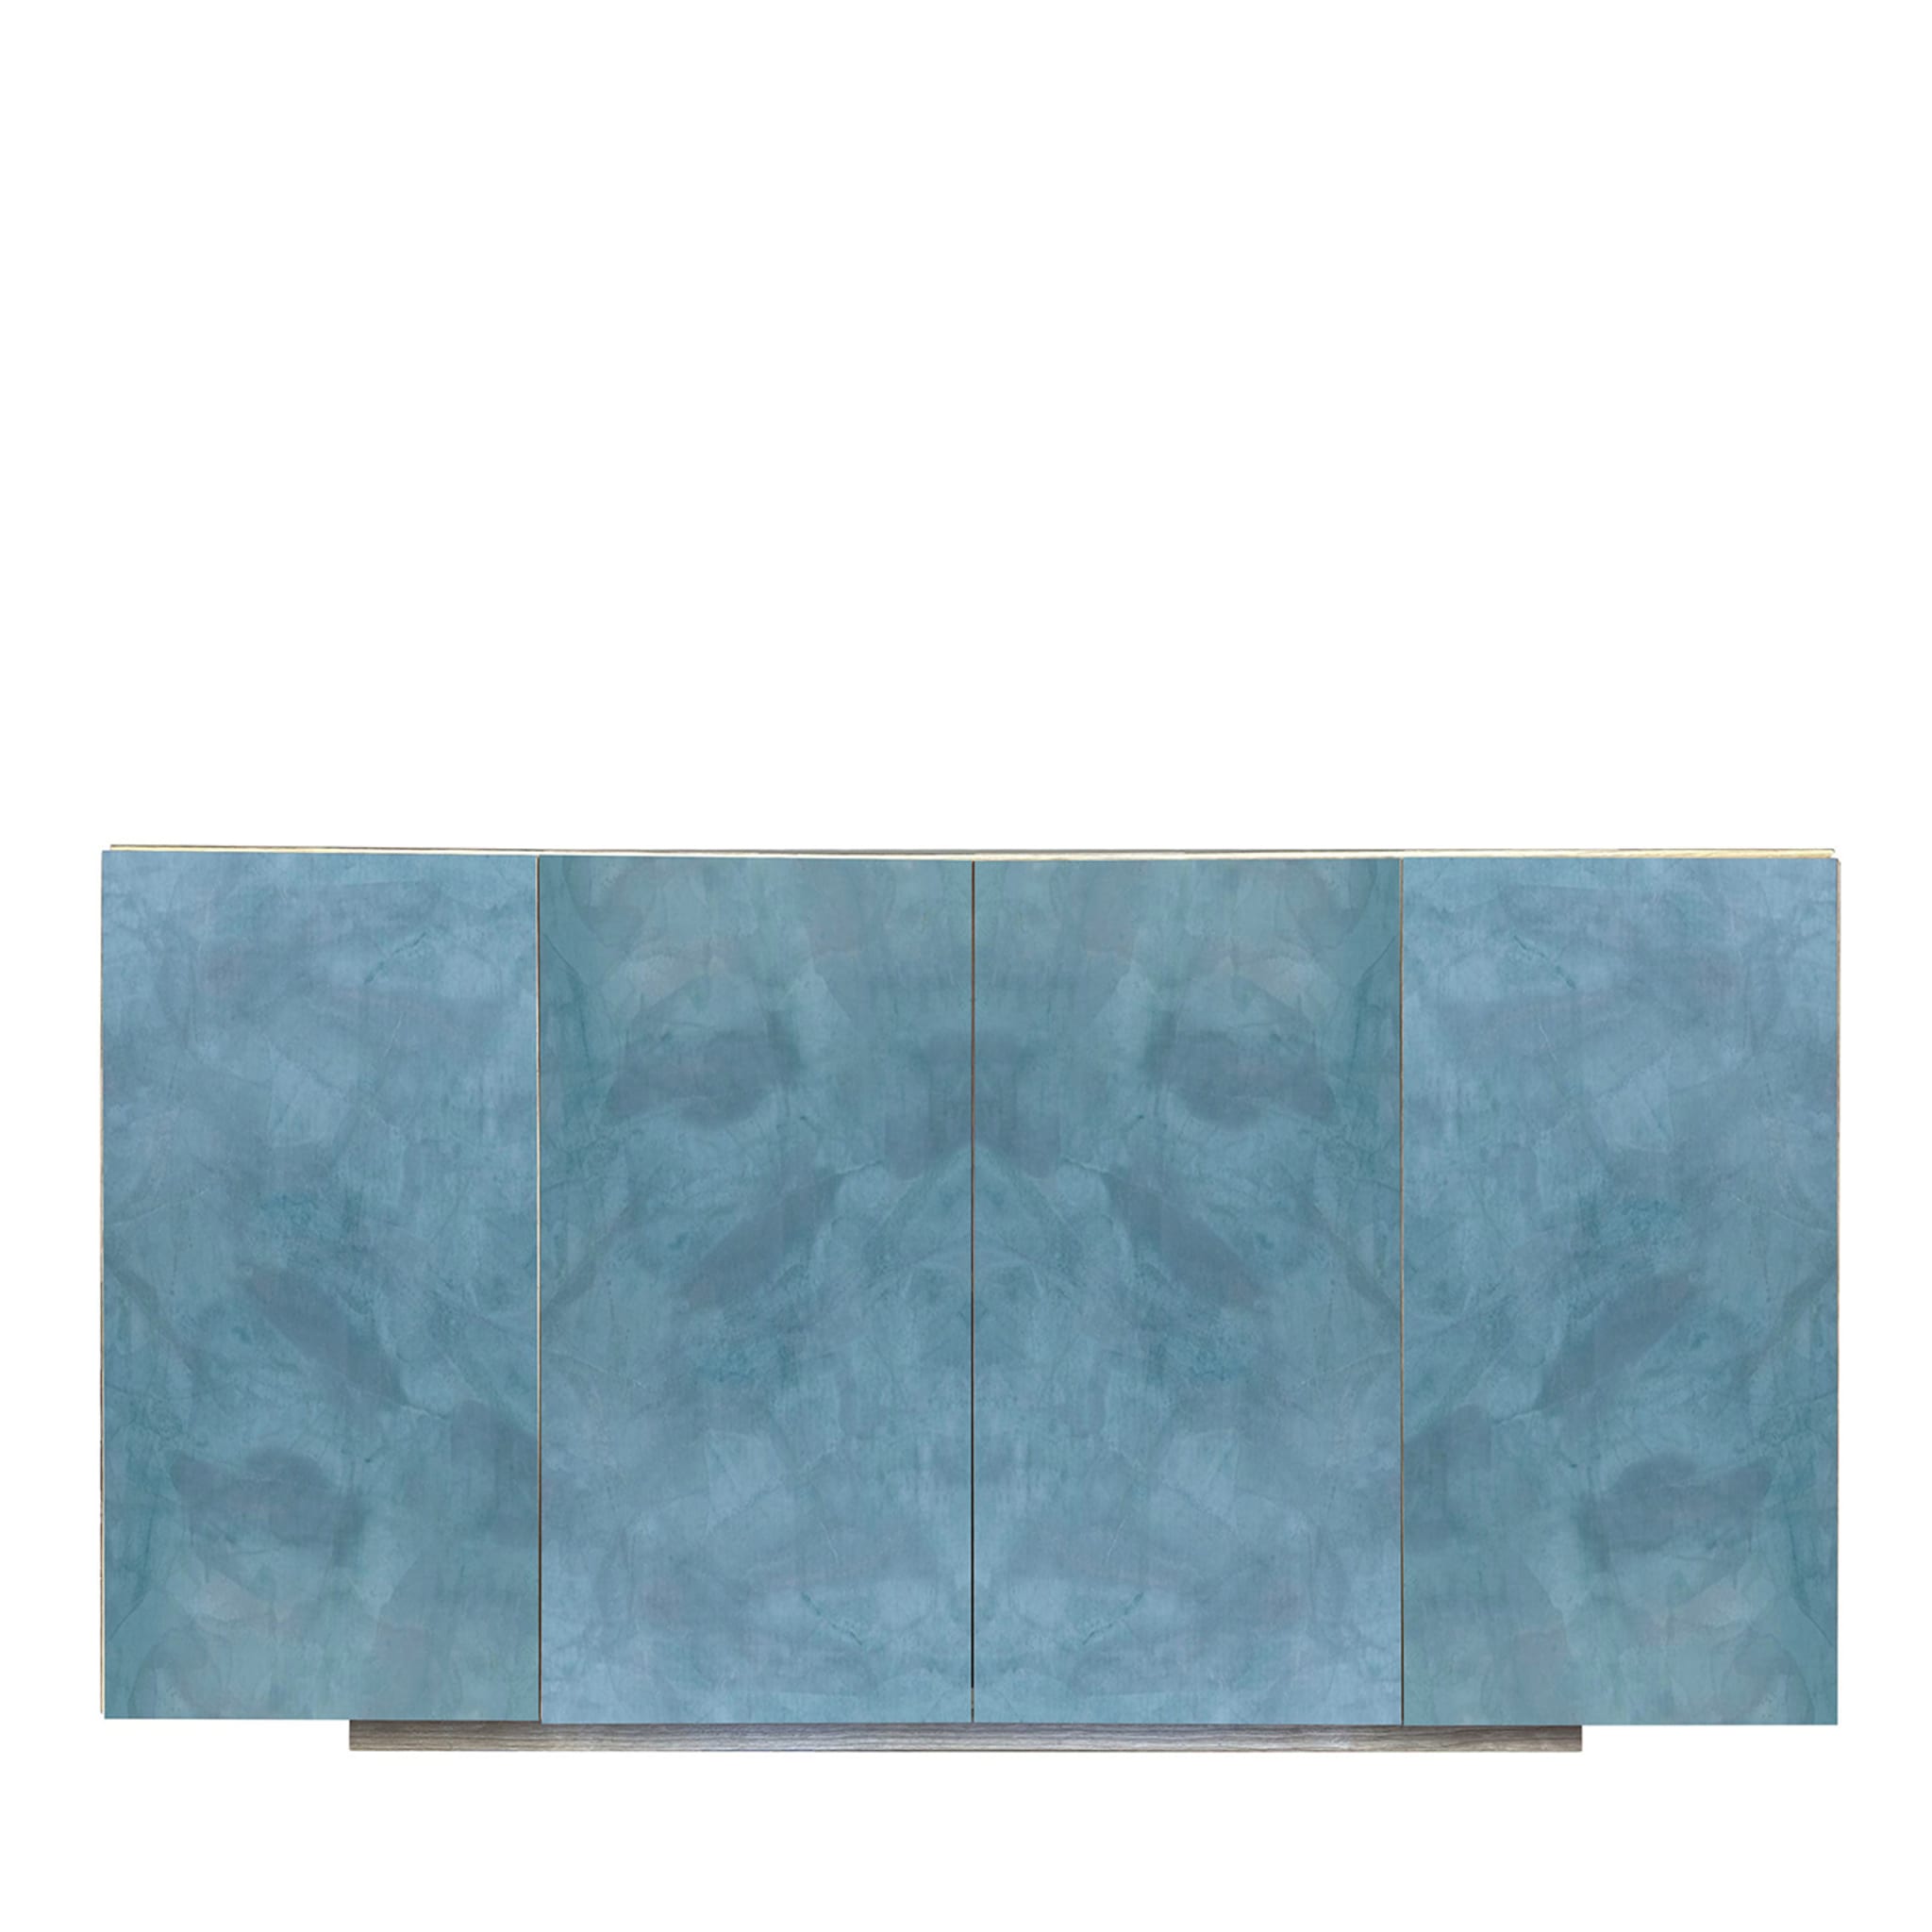 Boccadarno Sei 4-türiges blaues Sideboard von Meccani Studio - Hauptansicht